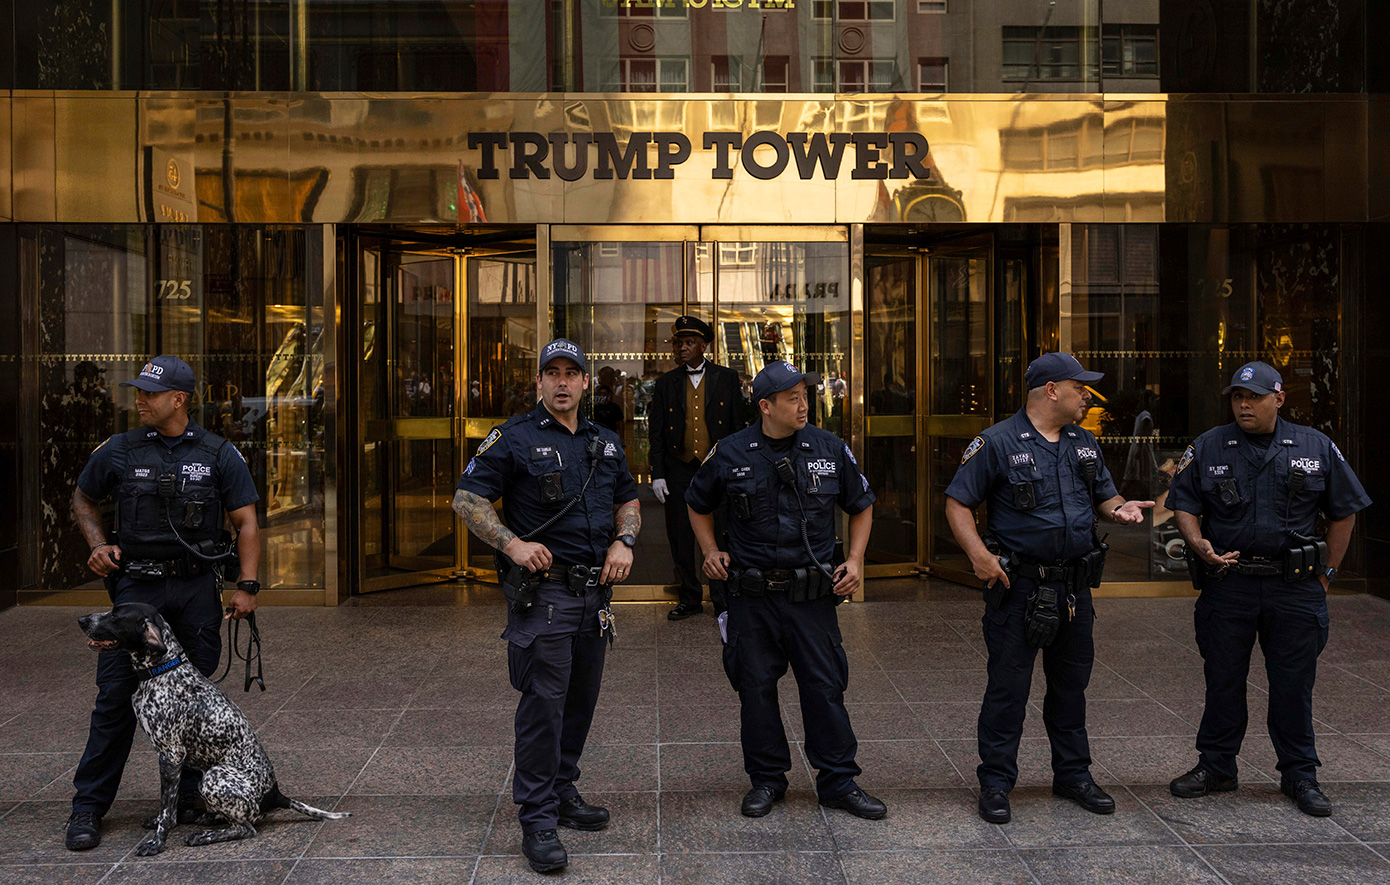 Αυξήθηκαν τα μέτρα ασφαλείας στον «Πύργο του Τραμπ» στη Νέα Υόρκη μετά την απόπειρα δολοφονίας σε βάρος του